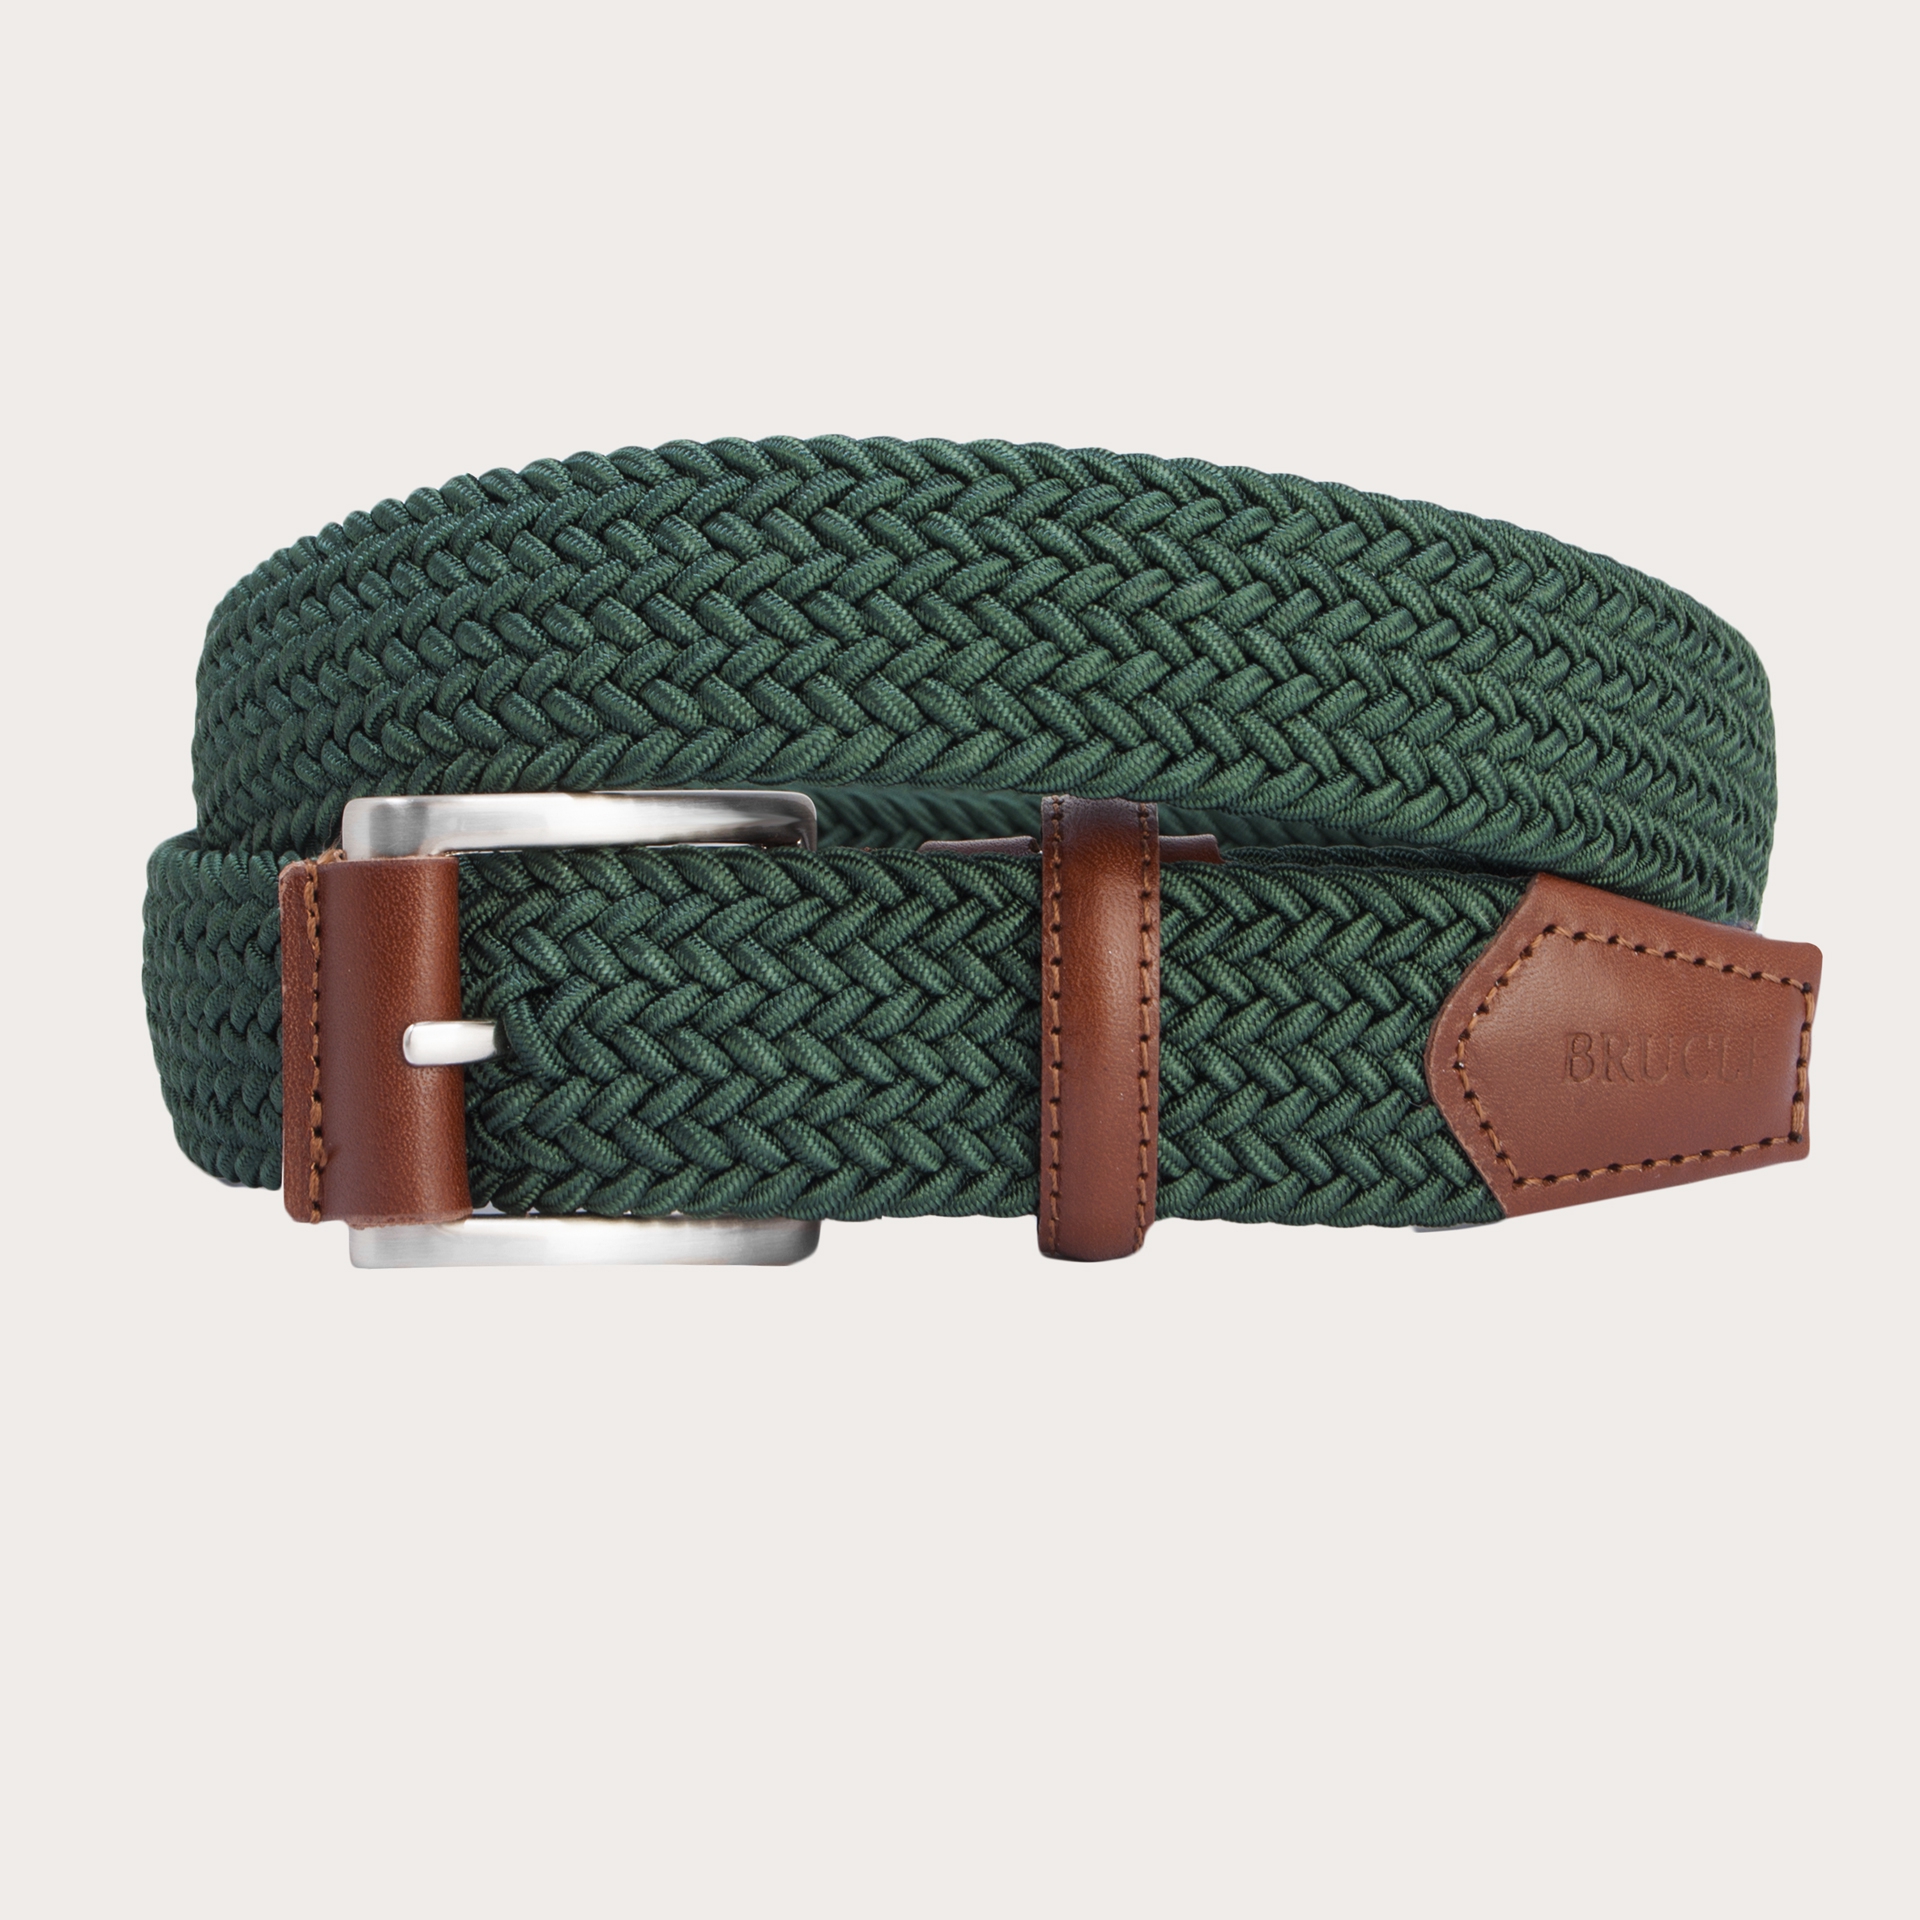 BRUCLE Green elastic braided belt